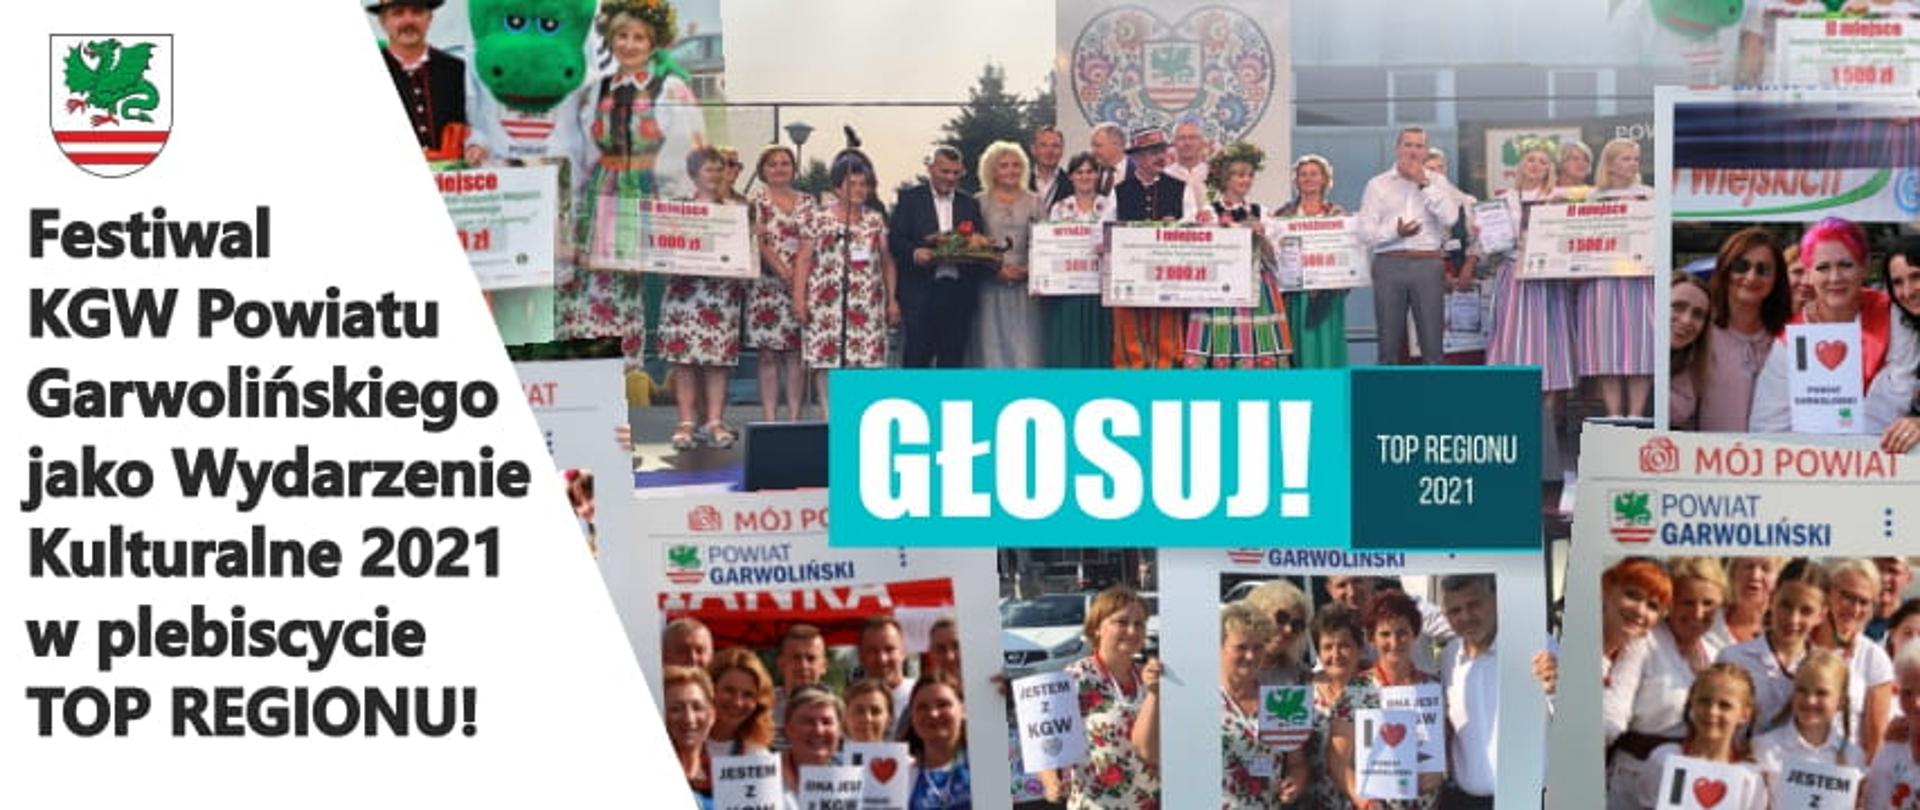 Festiwal KGW Powiatu Garwolińskiego - Top Regionu